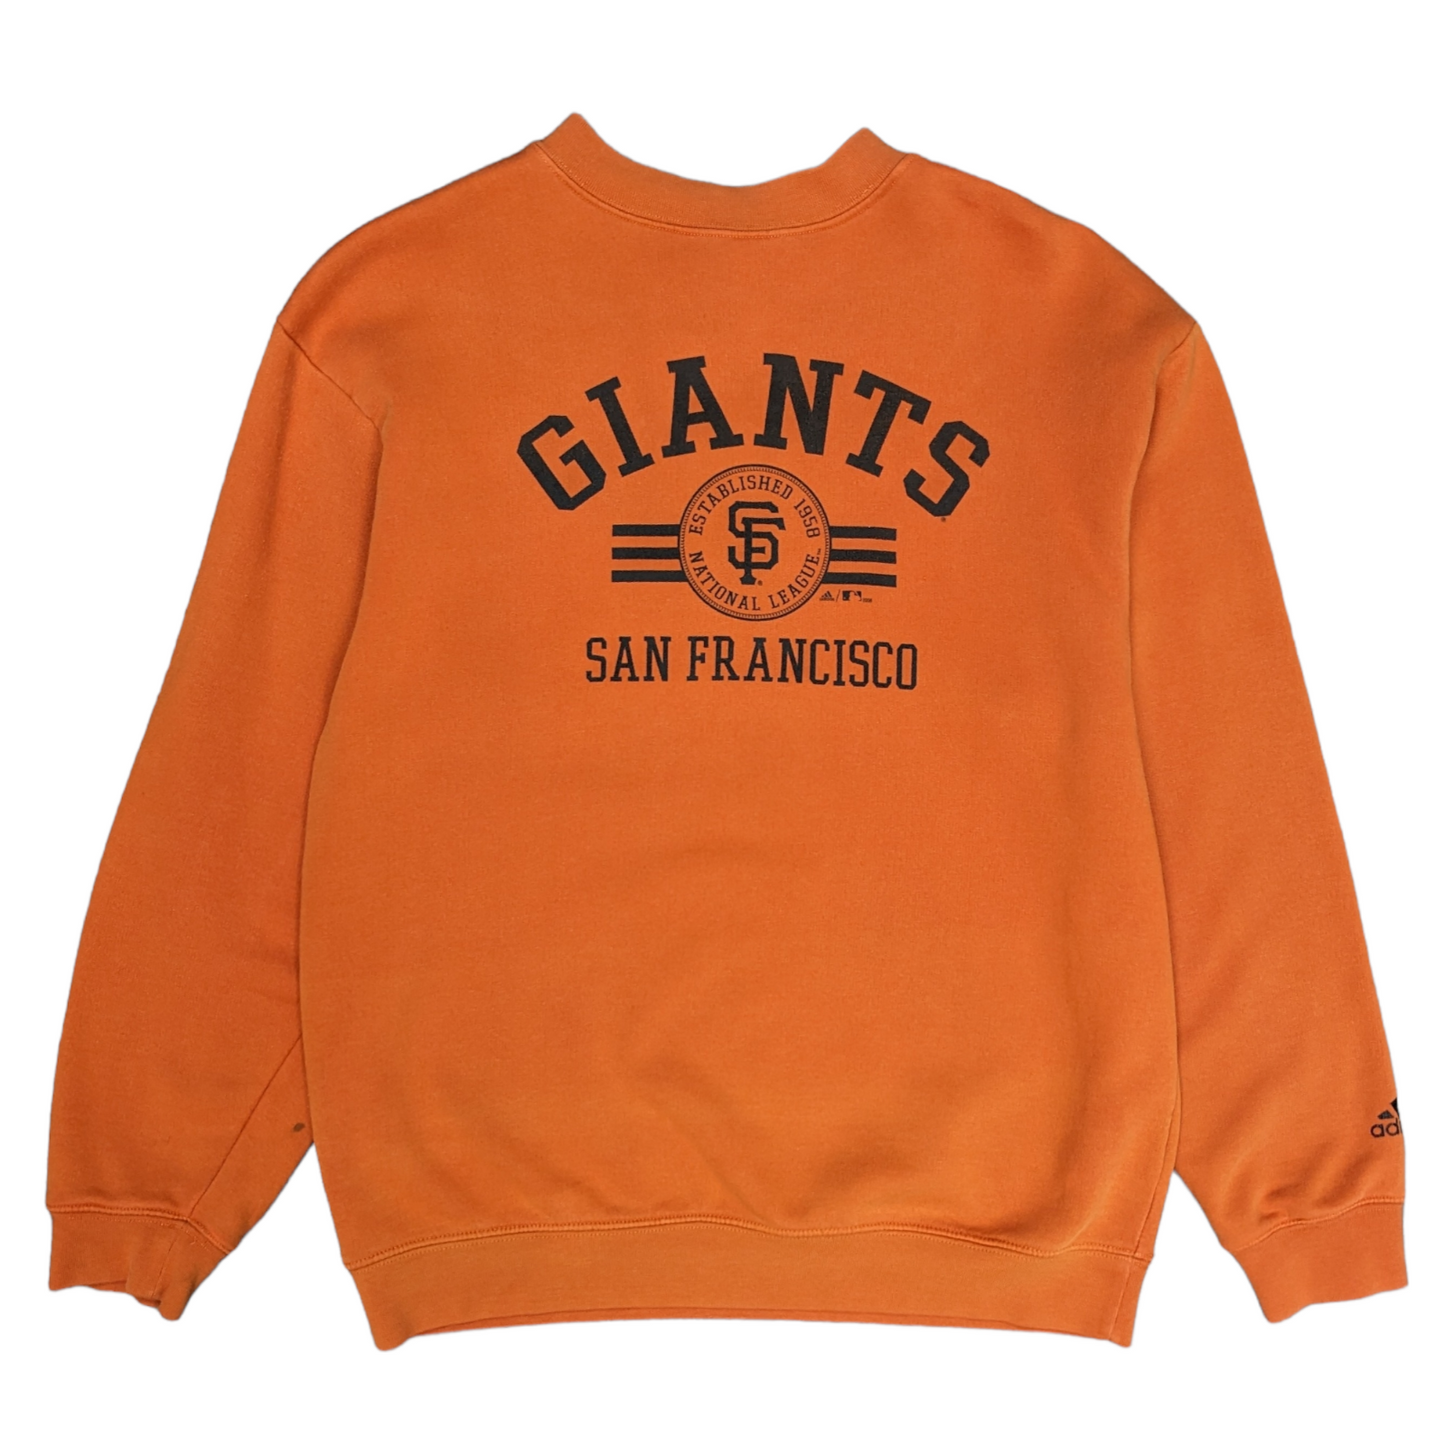 00s Adidas Giants Sweatshirt Size S